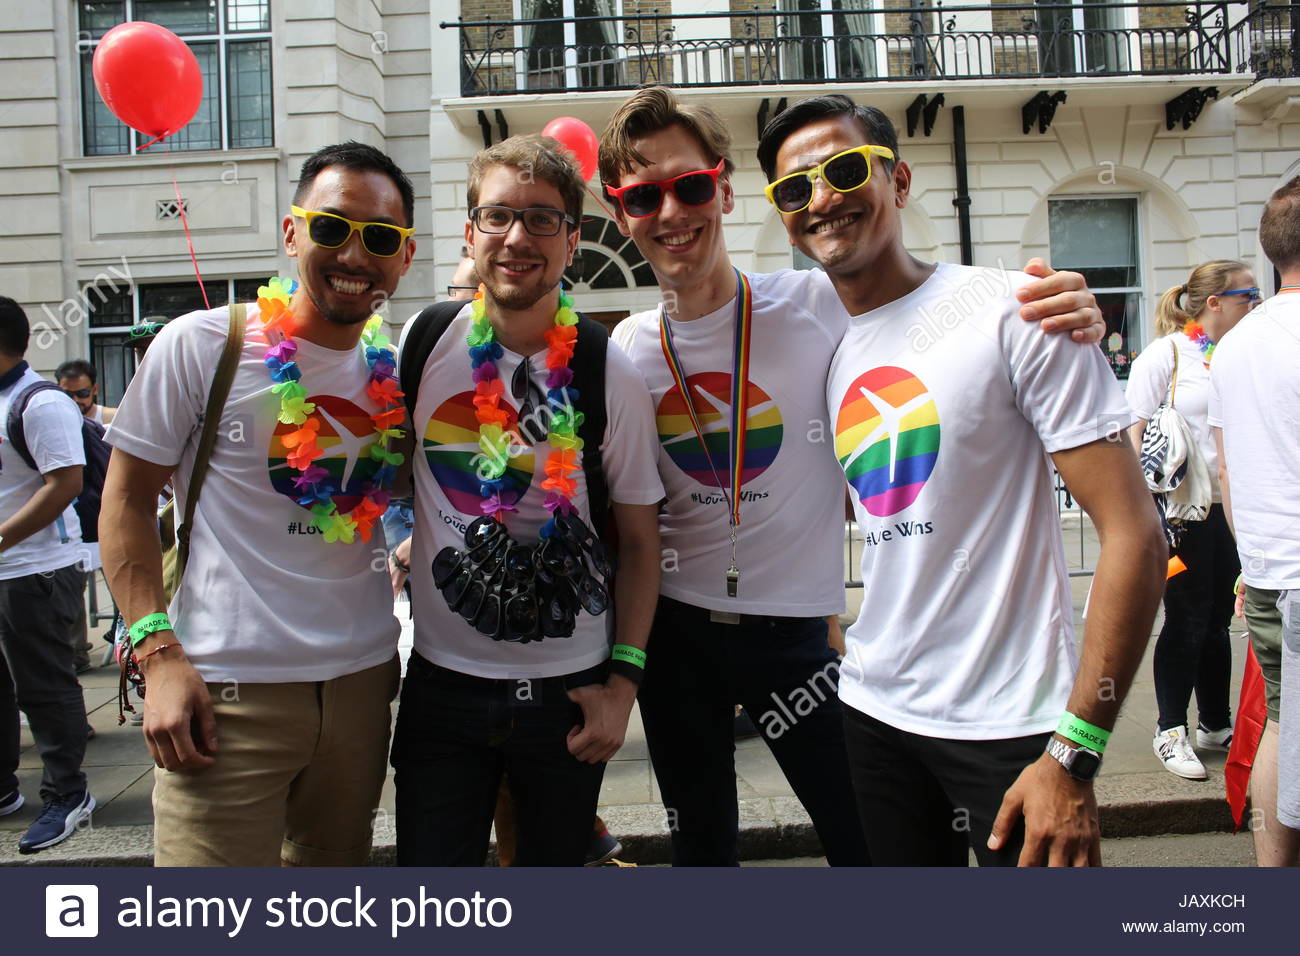 Les participants à la London Pride Parade 2016 posent pour une photo. Banque D'Images